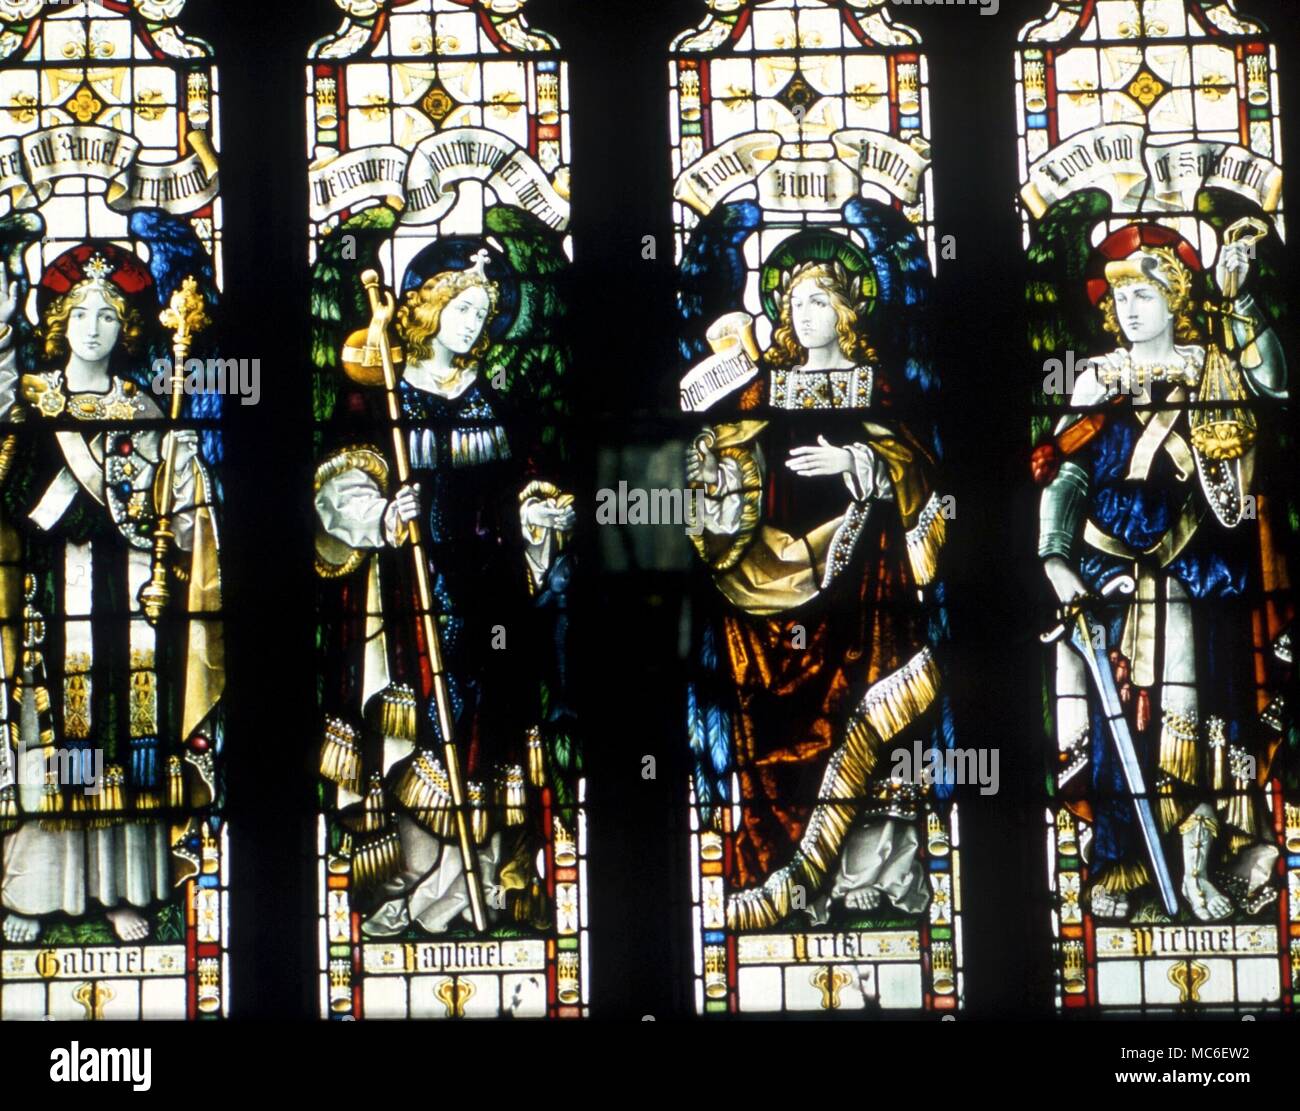 Engel - Die vier Erzengel Michael, Raphael, Gabriel und Uriel, in der Kirchenfenster der St. James Kirche, Kilkhampton Stockfoto